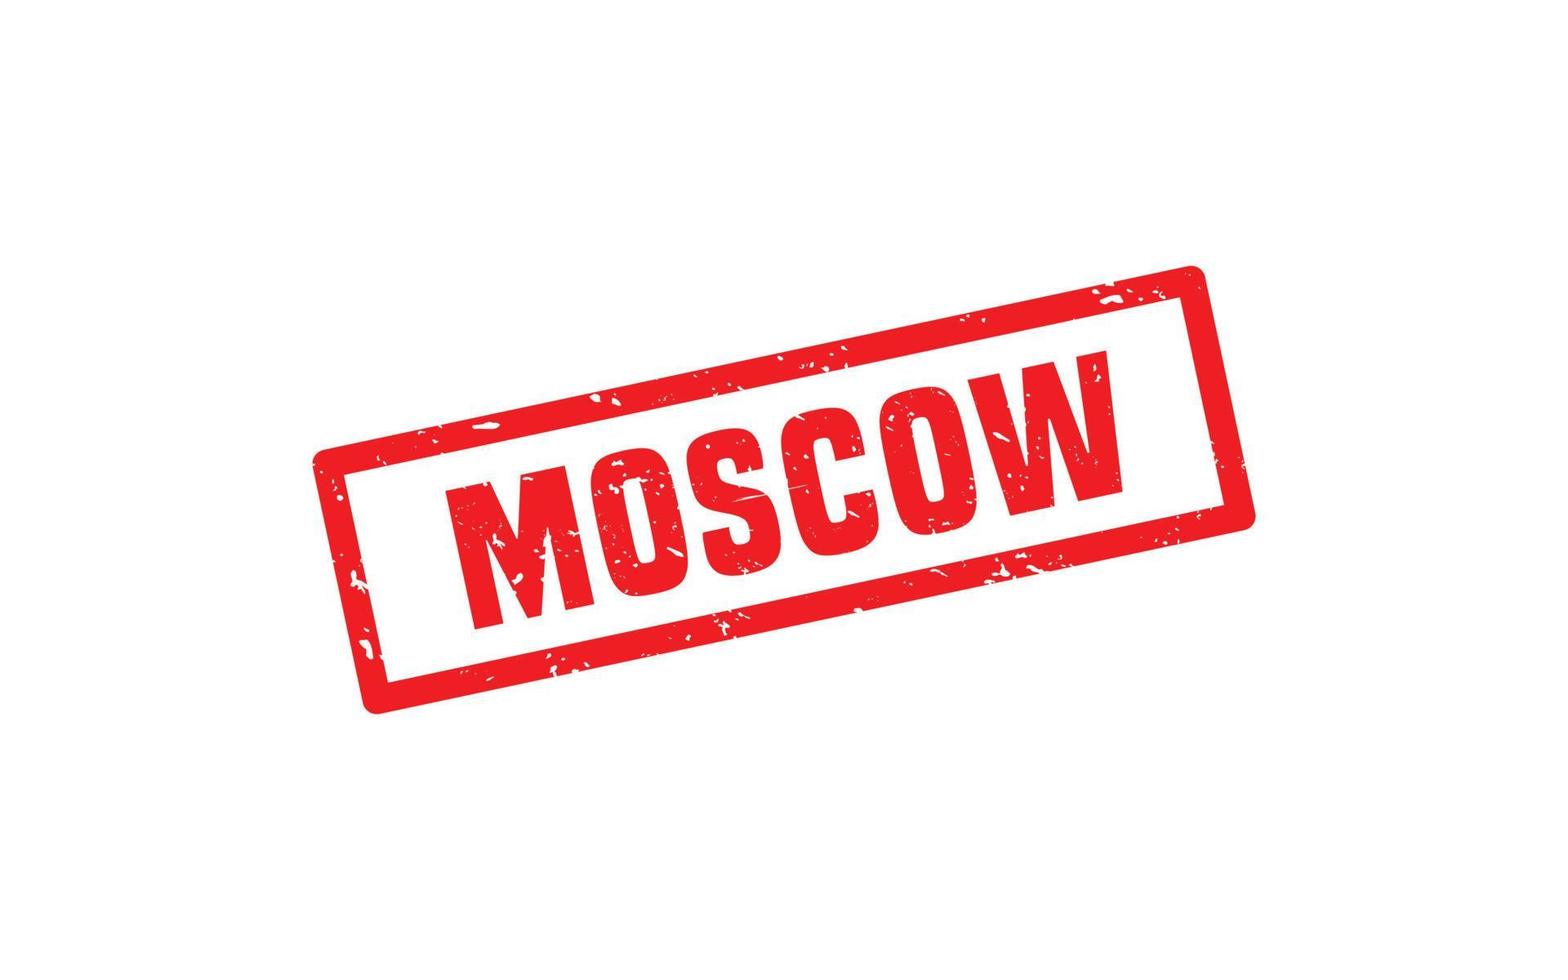 moskva ryssland sudd stämpel textur med grunge stil på vit bakgrund vektor